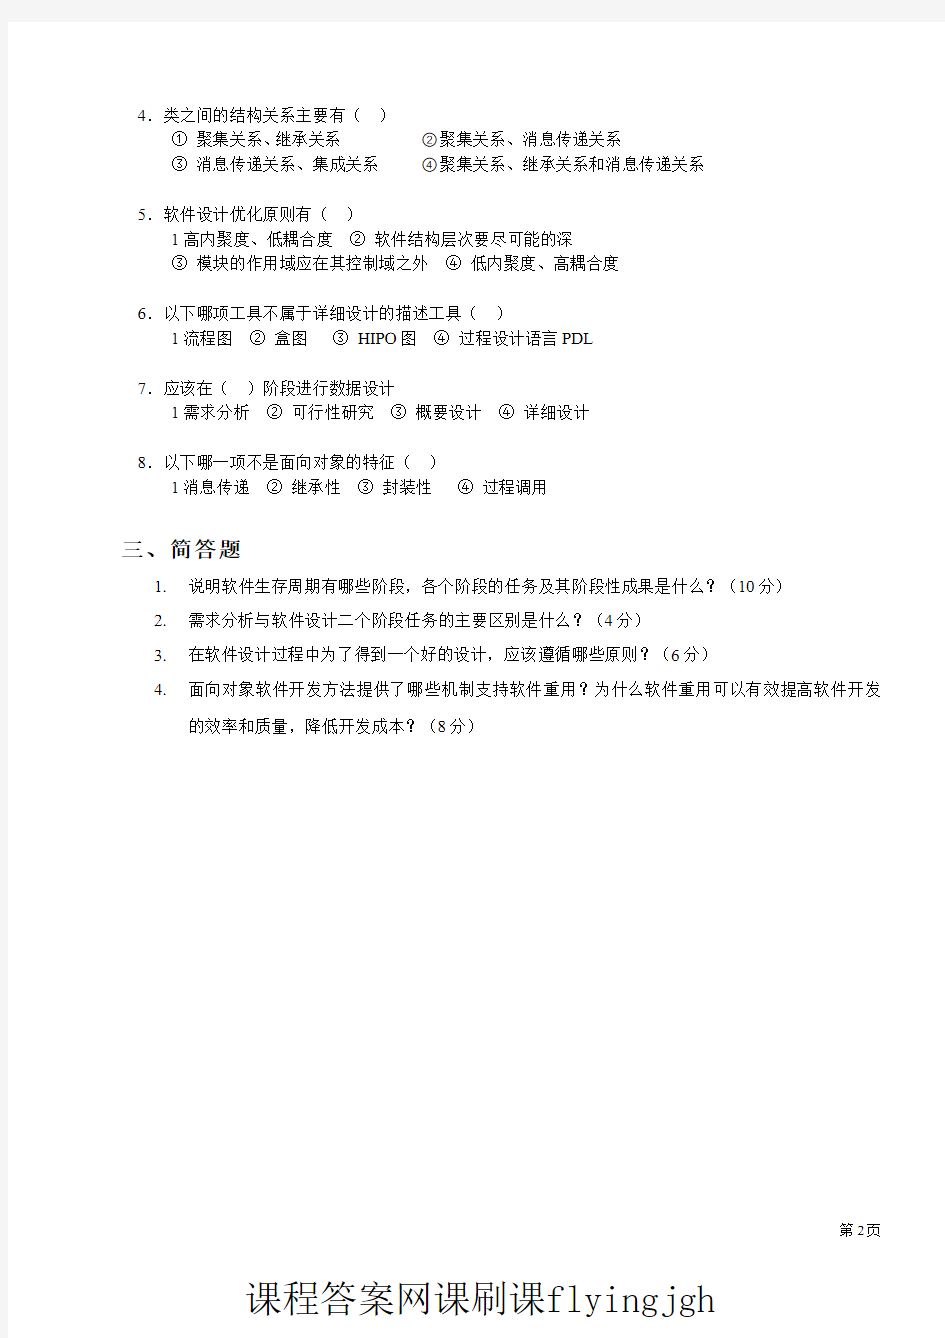 中国大学MOOC慕课爱课程(16)--试卷16网课刷课